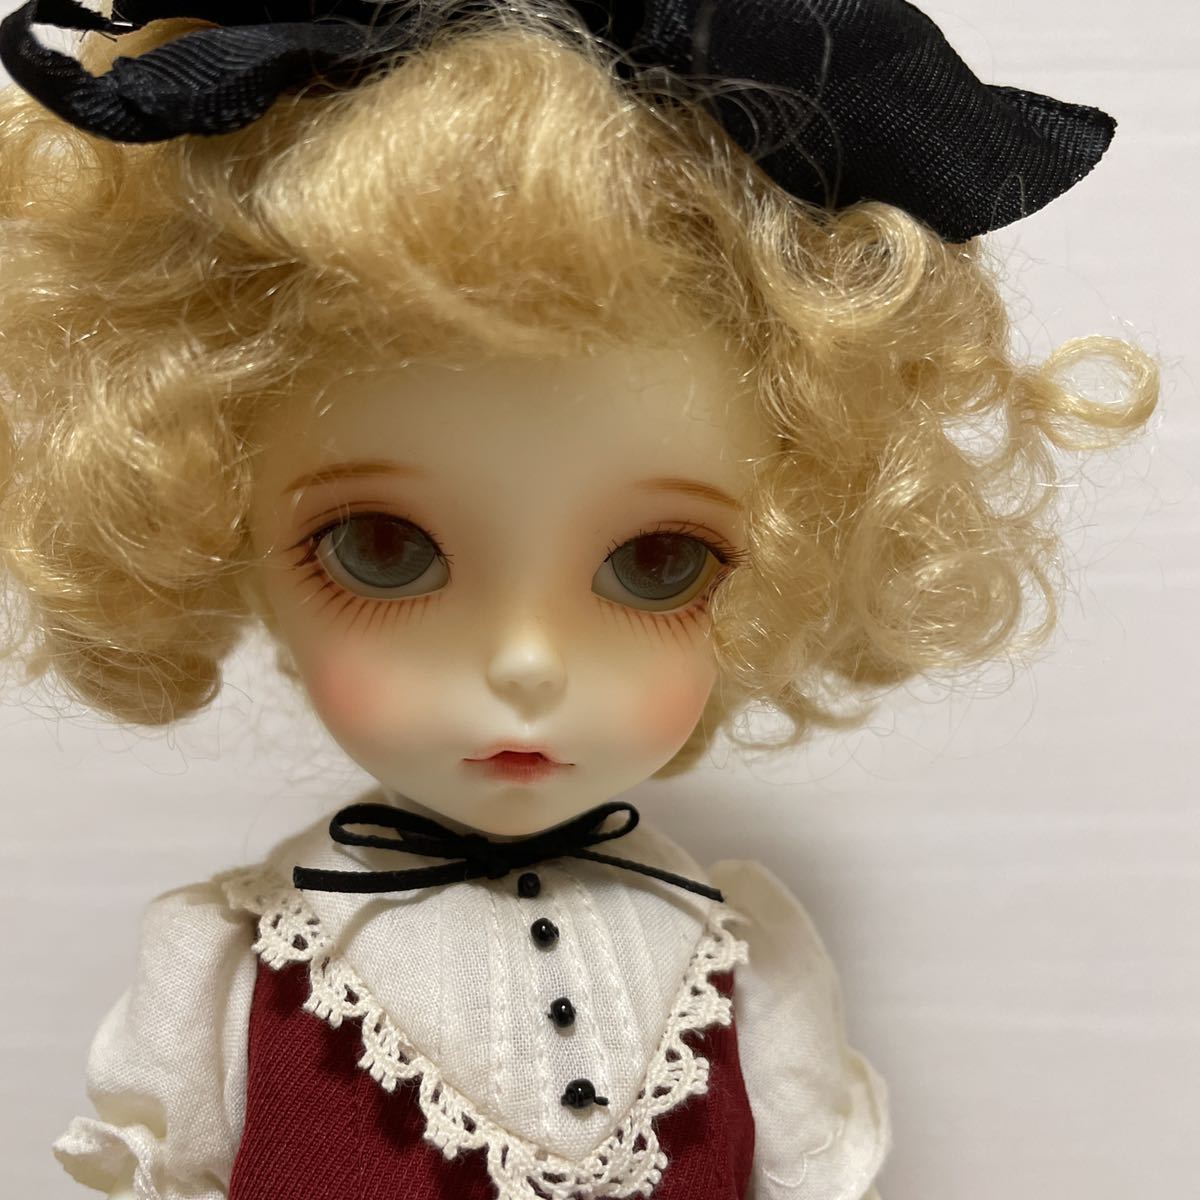 Imda Doll 2 2 White Skin Amelia Soom韓国球体関節人形 本体 売買されたオークション情報 Yahooの商品情報をアーカイブ公開 オークファン Aucfan Com